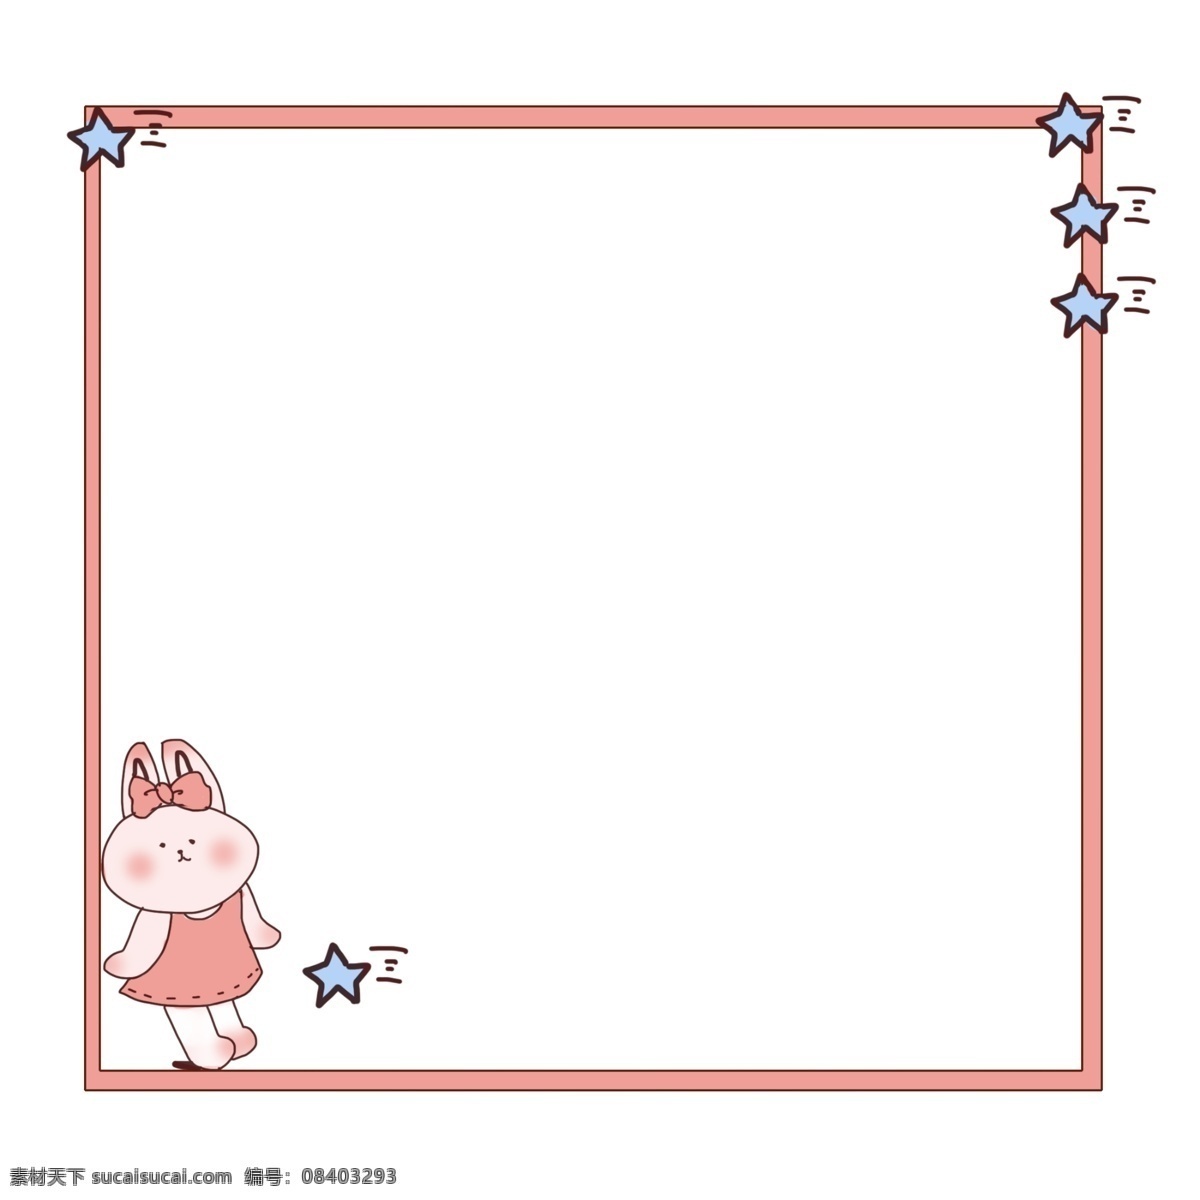 粉色 小 兔子 边框 插画 卡通小兔子 卡通边框插画 粉色边框 蓝色星星装饰 粉色小兔子 创意边框插画